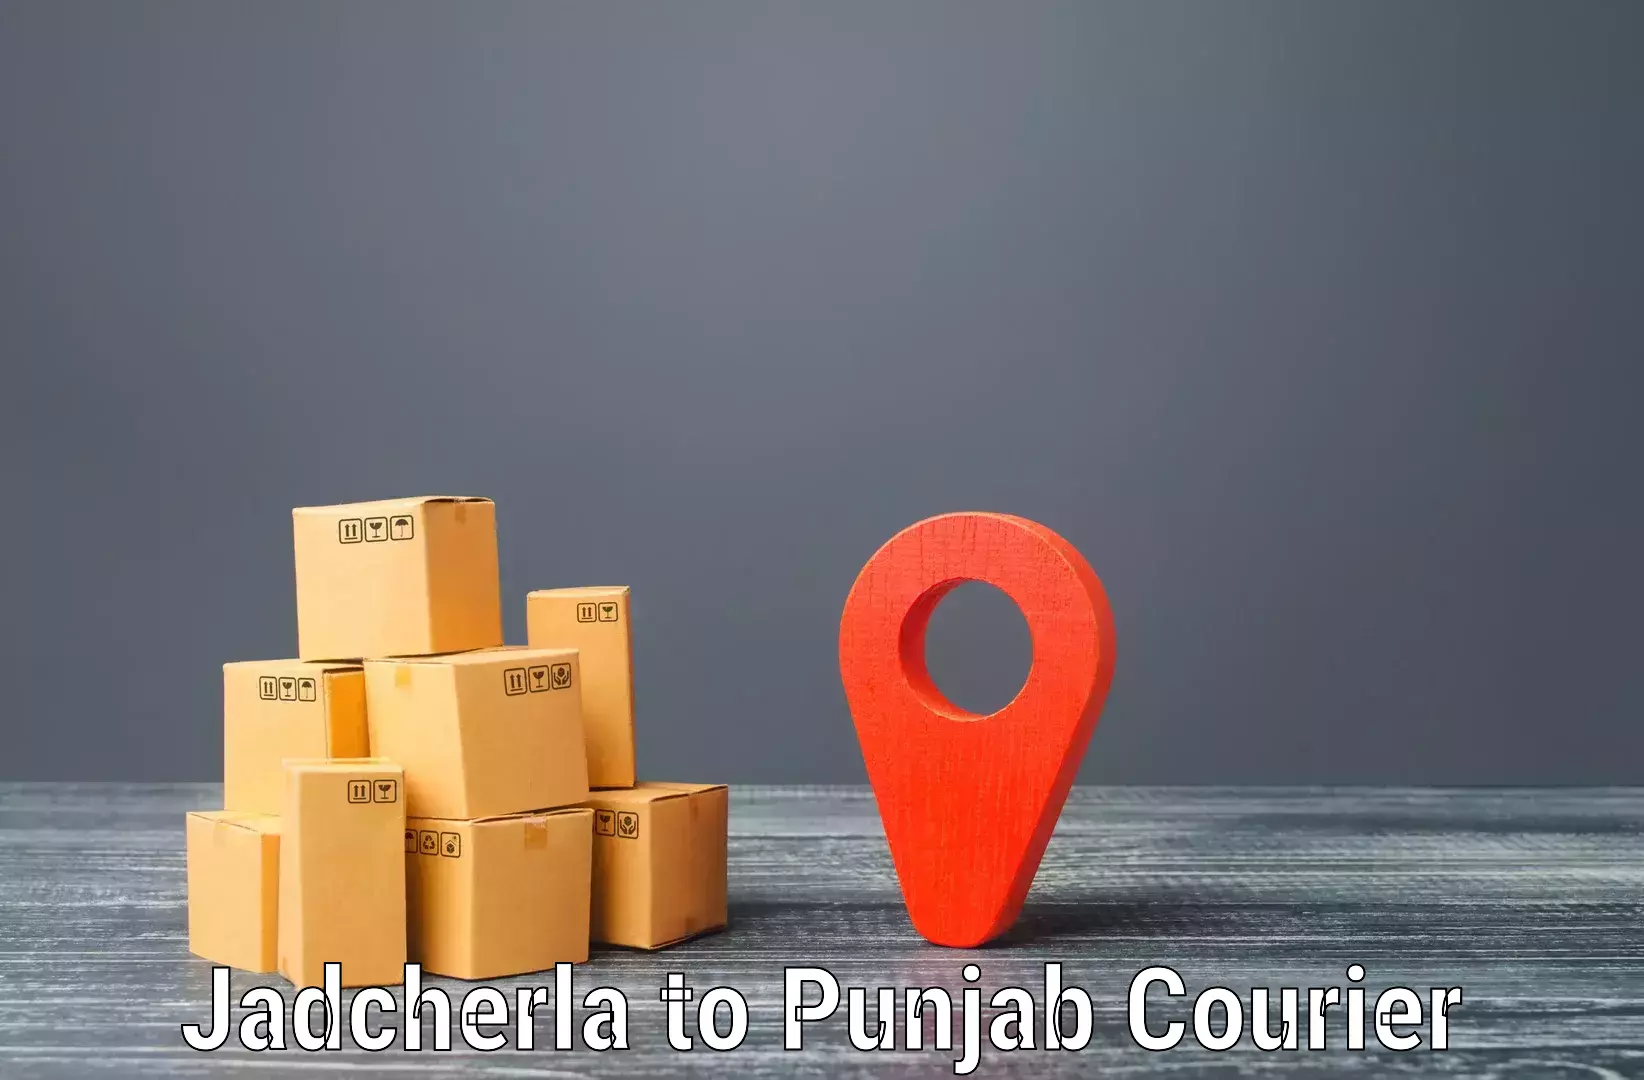 Full-service courier options Jadcherla to Kotkapura